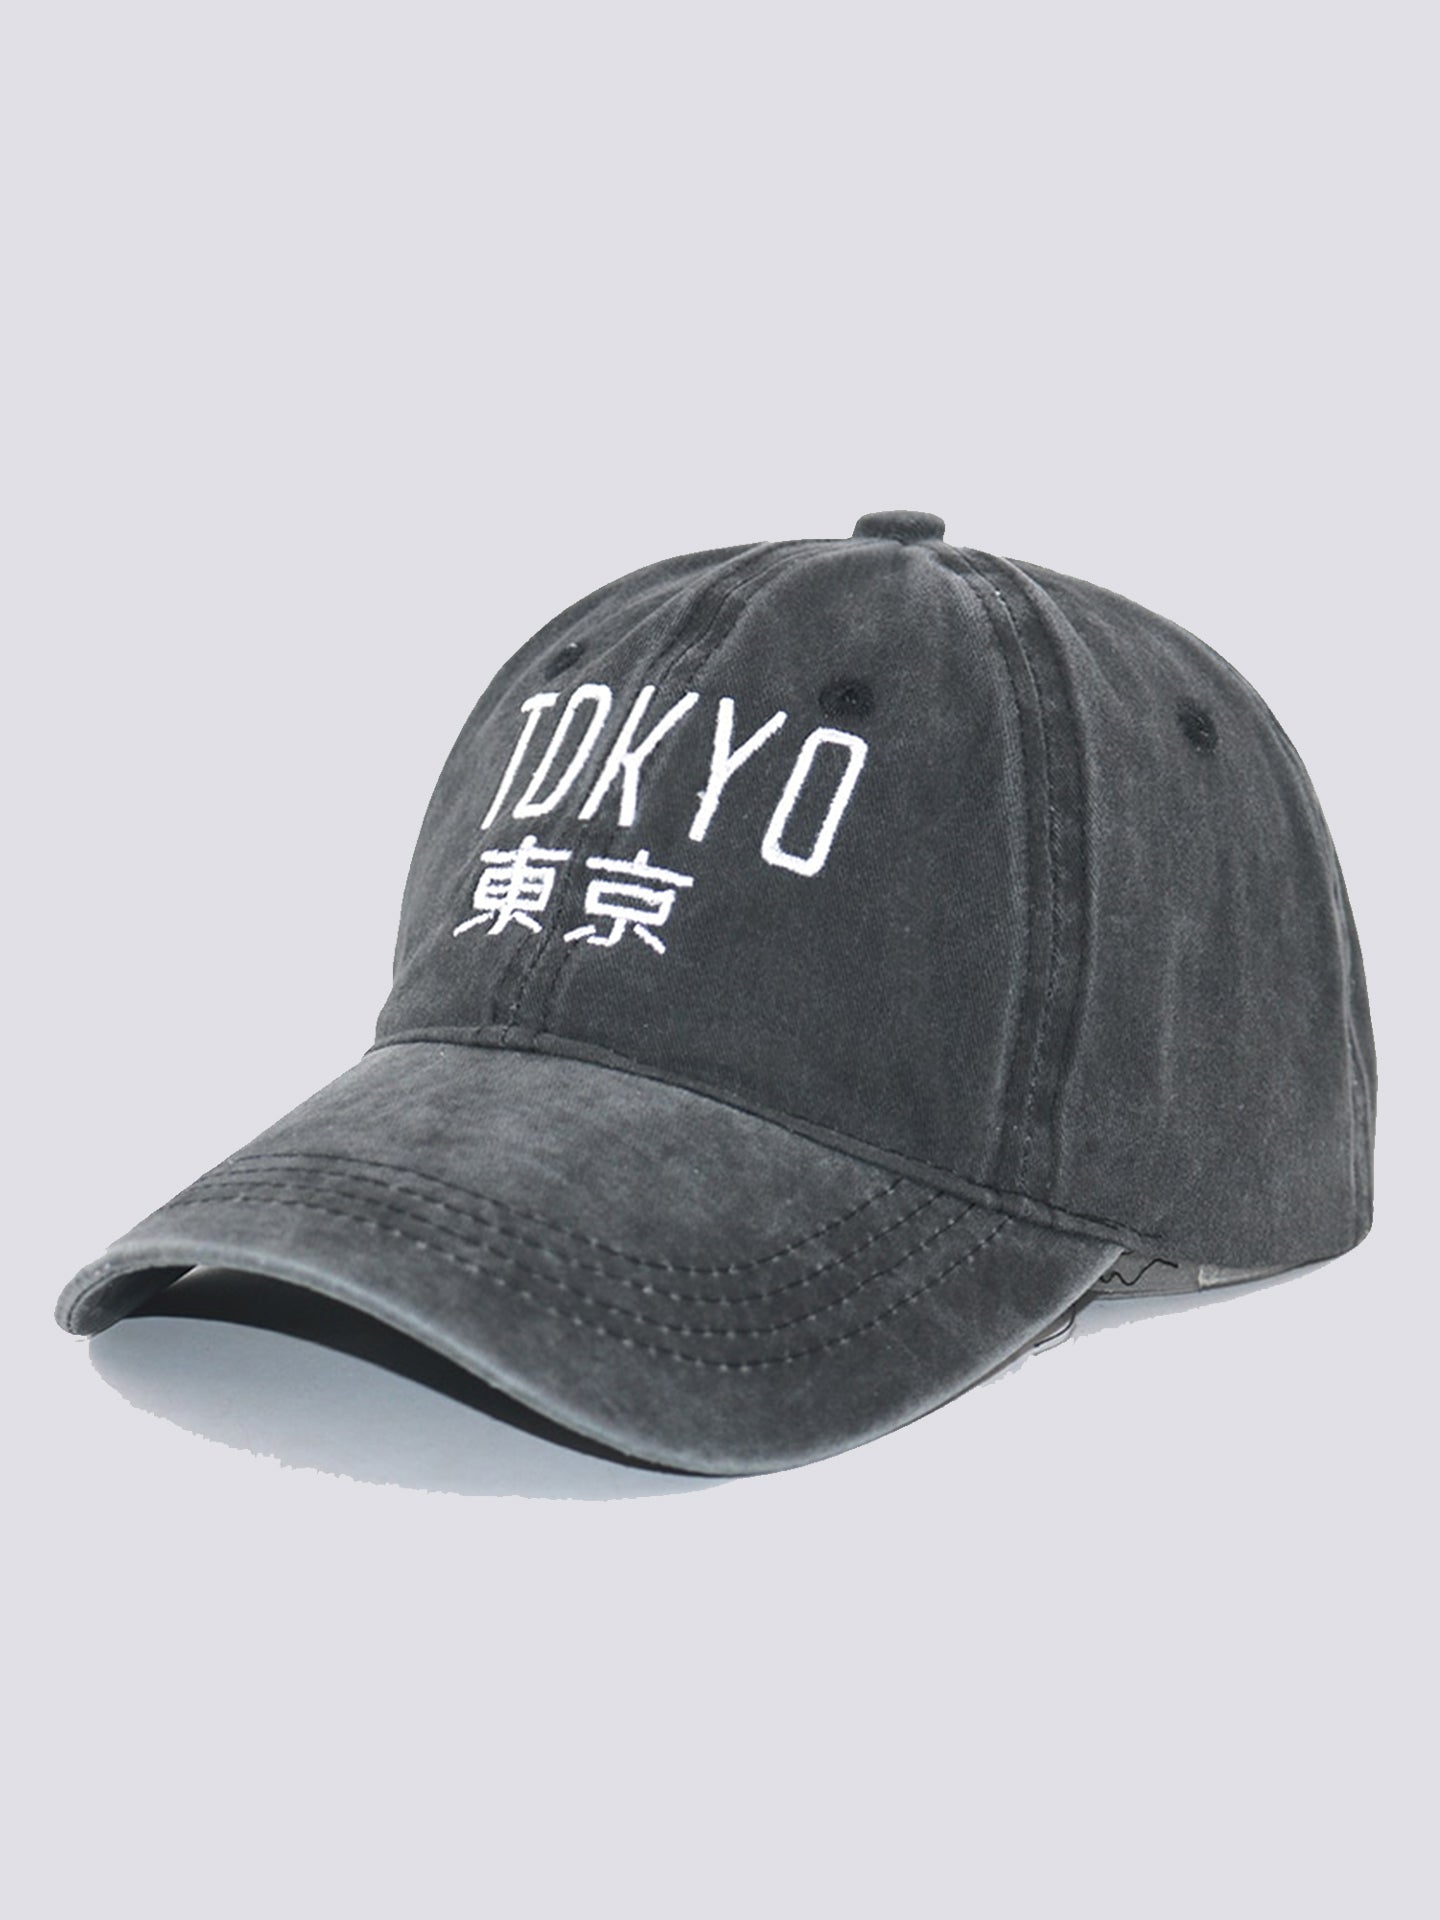 Tokyo Vintage Cap - Grey